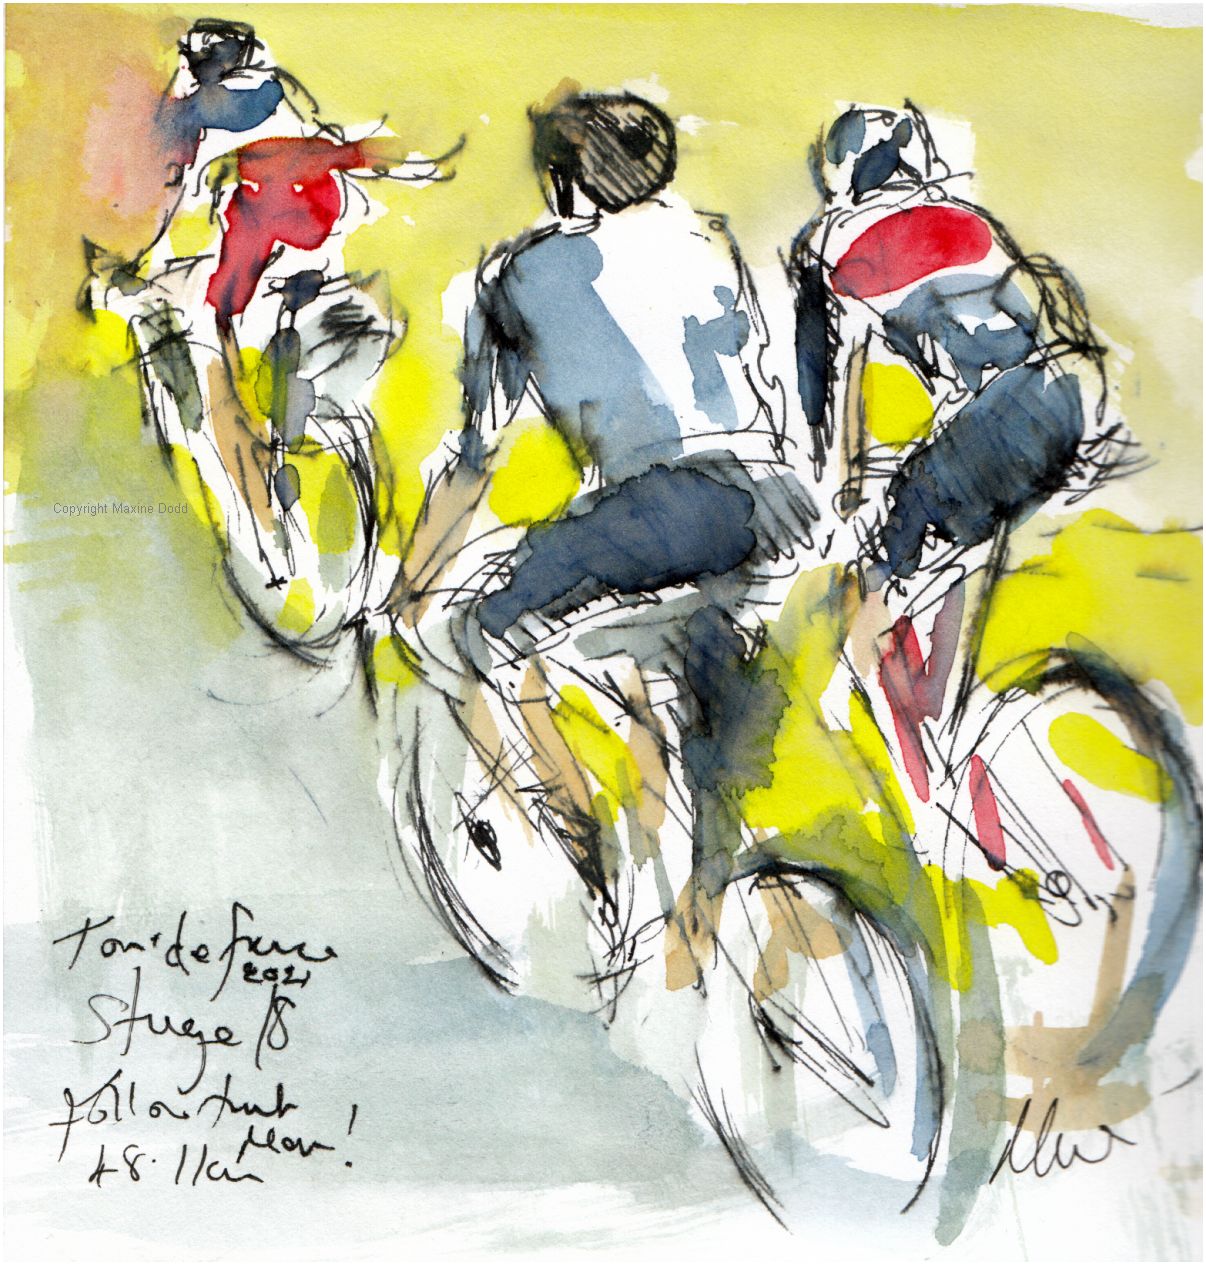 Tour de France 2021 - Stage18 - Follow that man! original watercolour painting Maxine Dodd